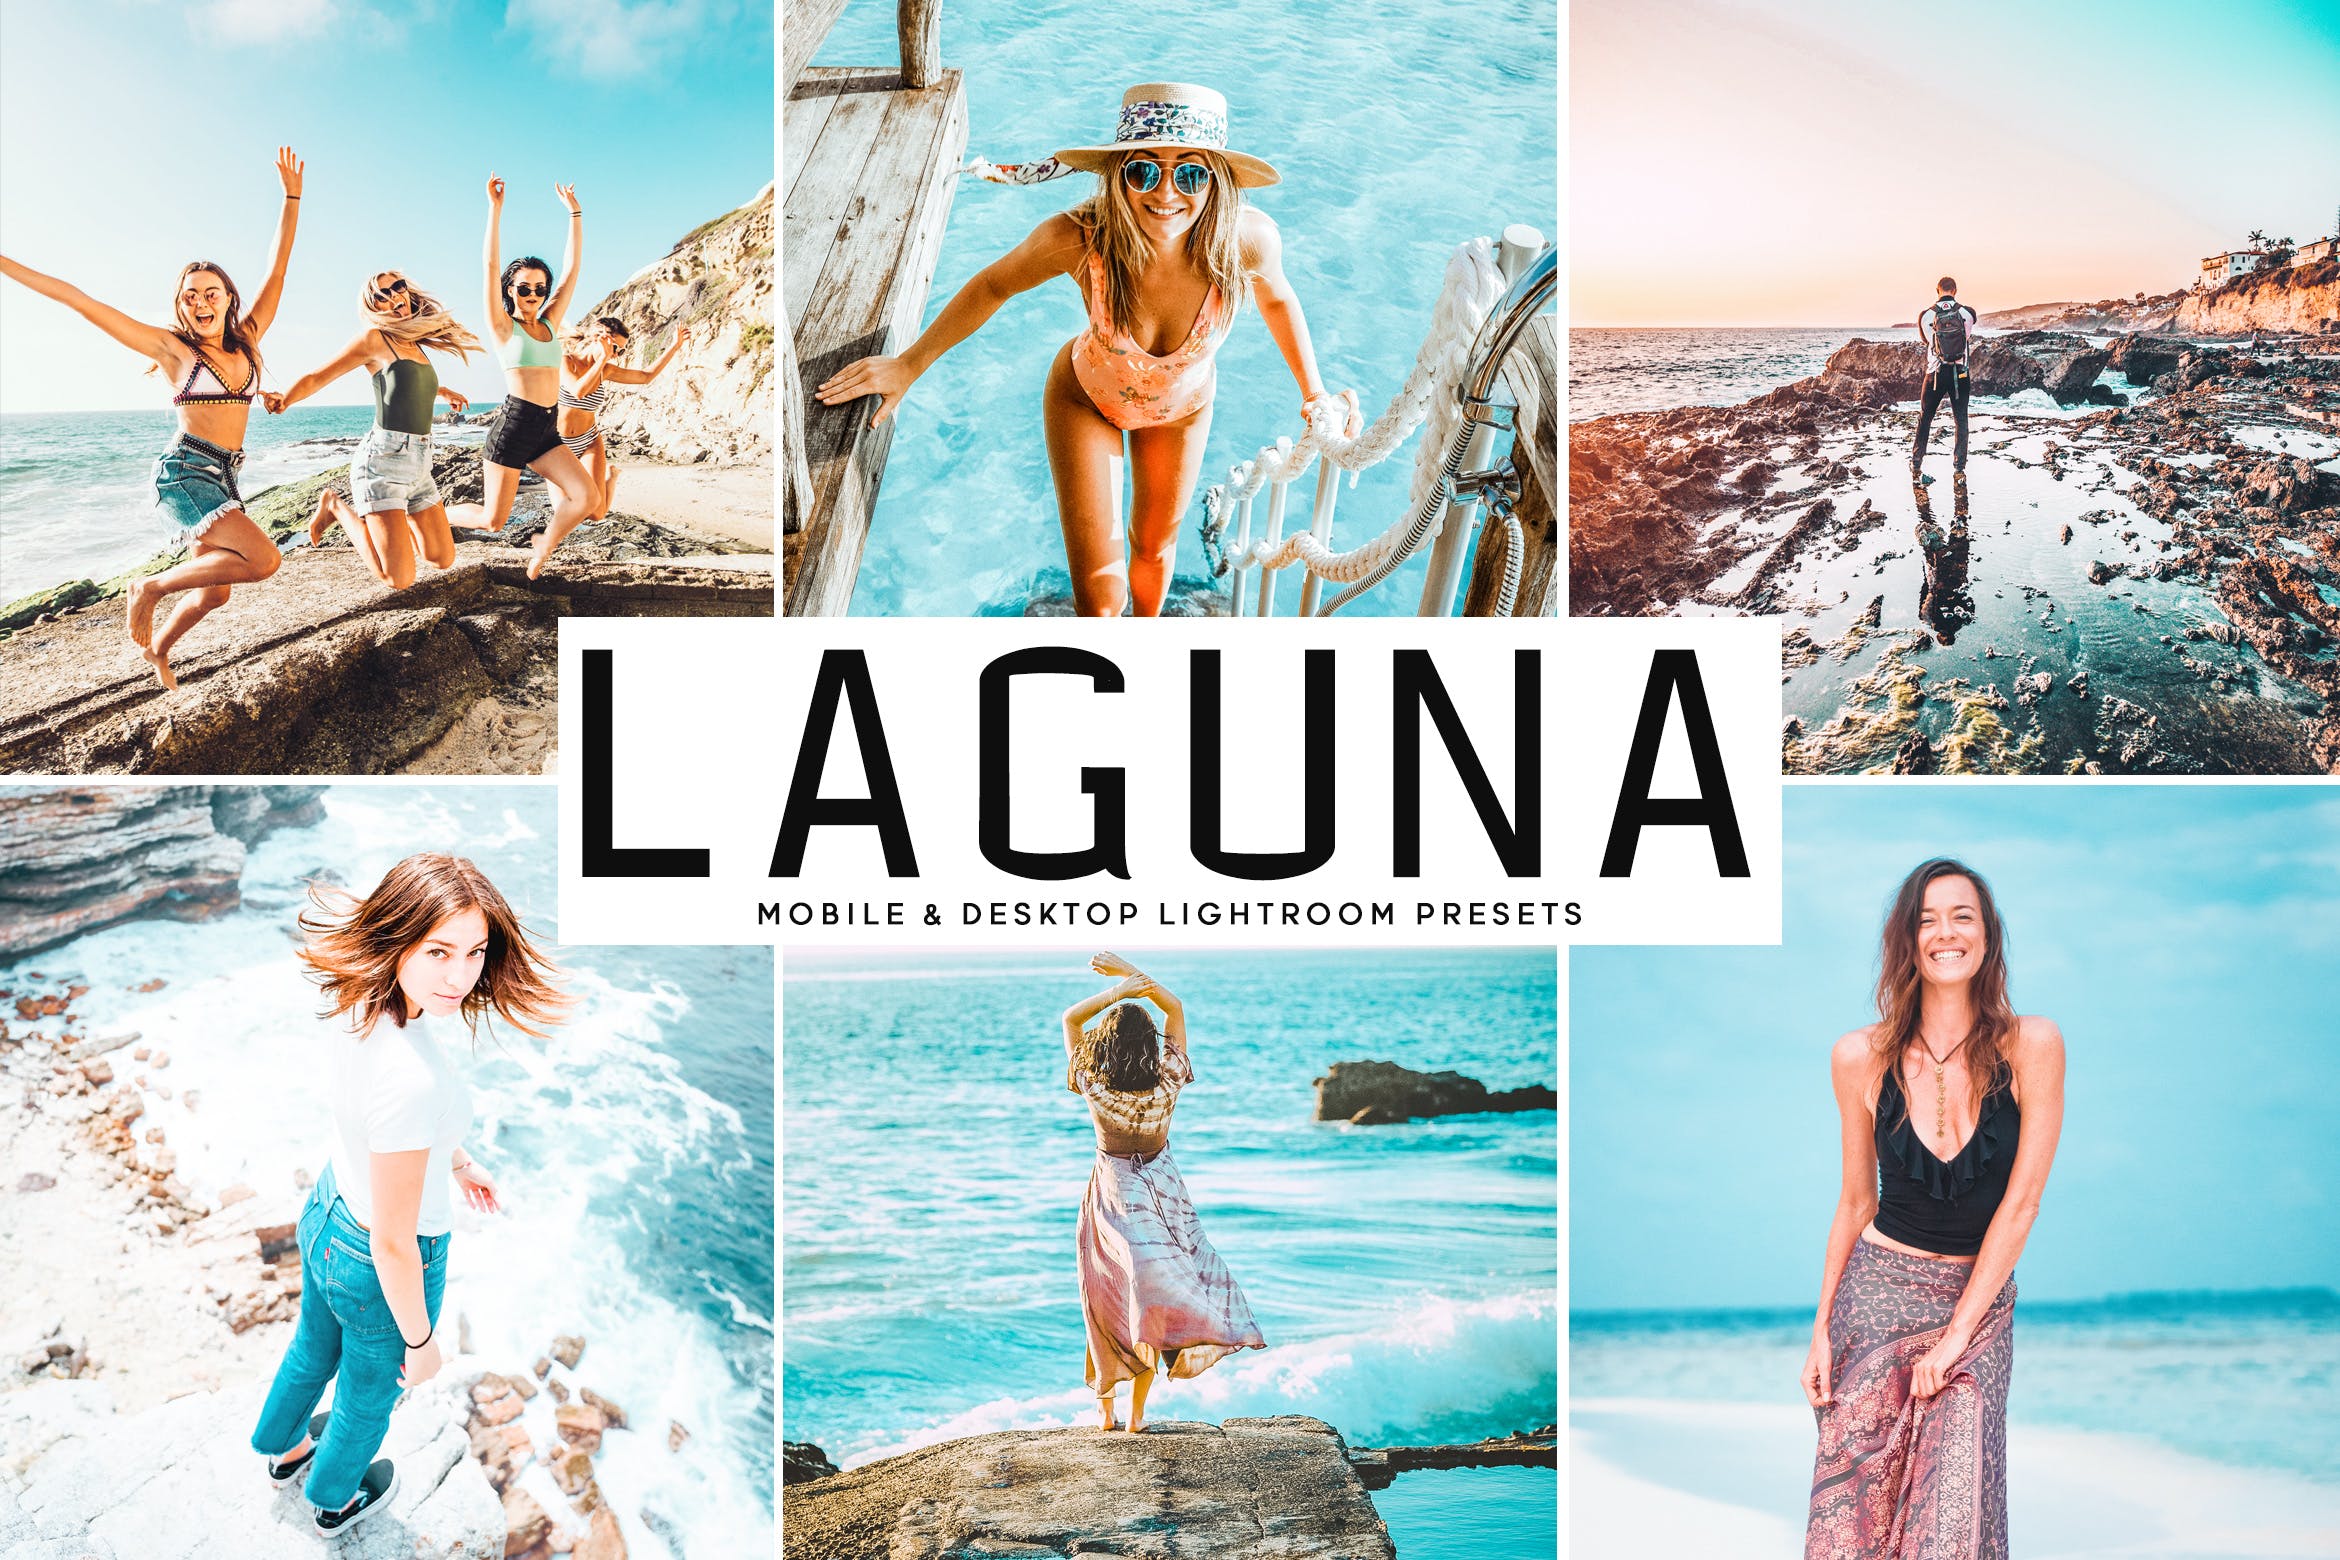 海洋海岛摄影绝配的调色滤镜第一素材精选LR预设 Laguna Mobile & Desktop Lightroom Presets插图